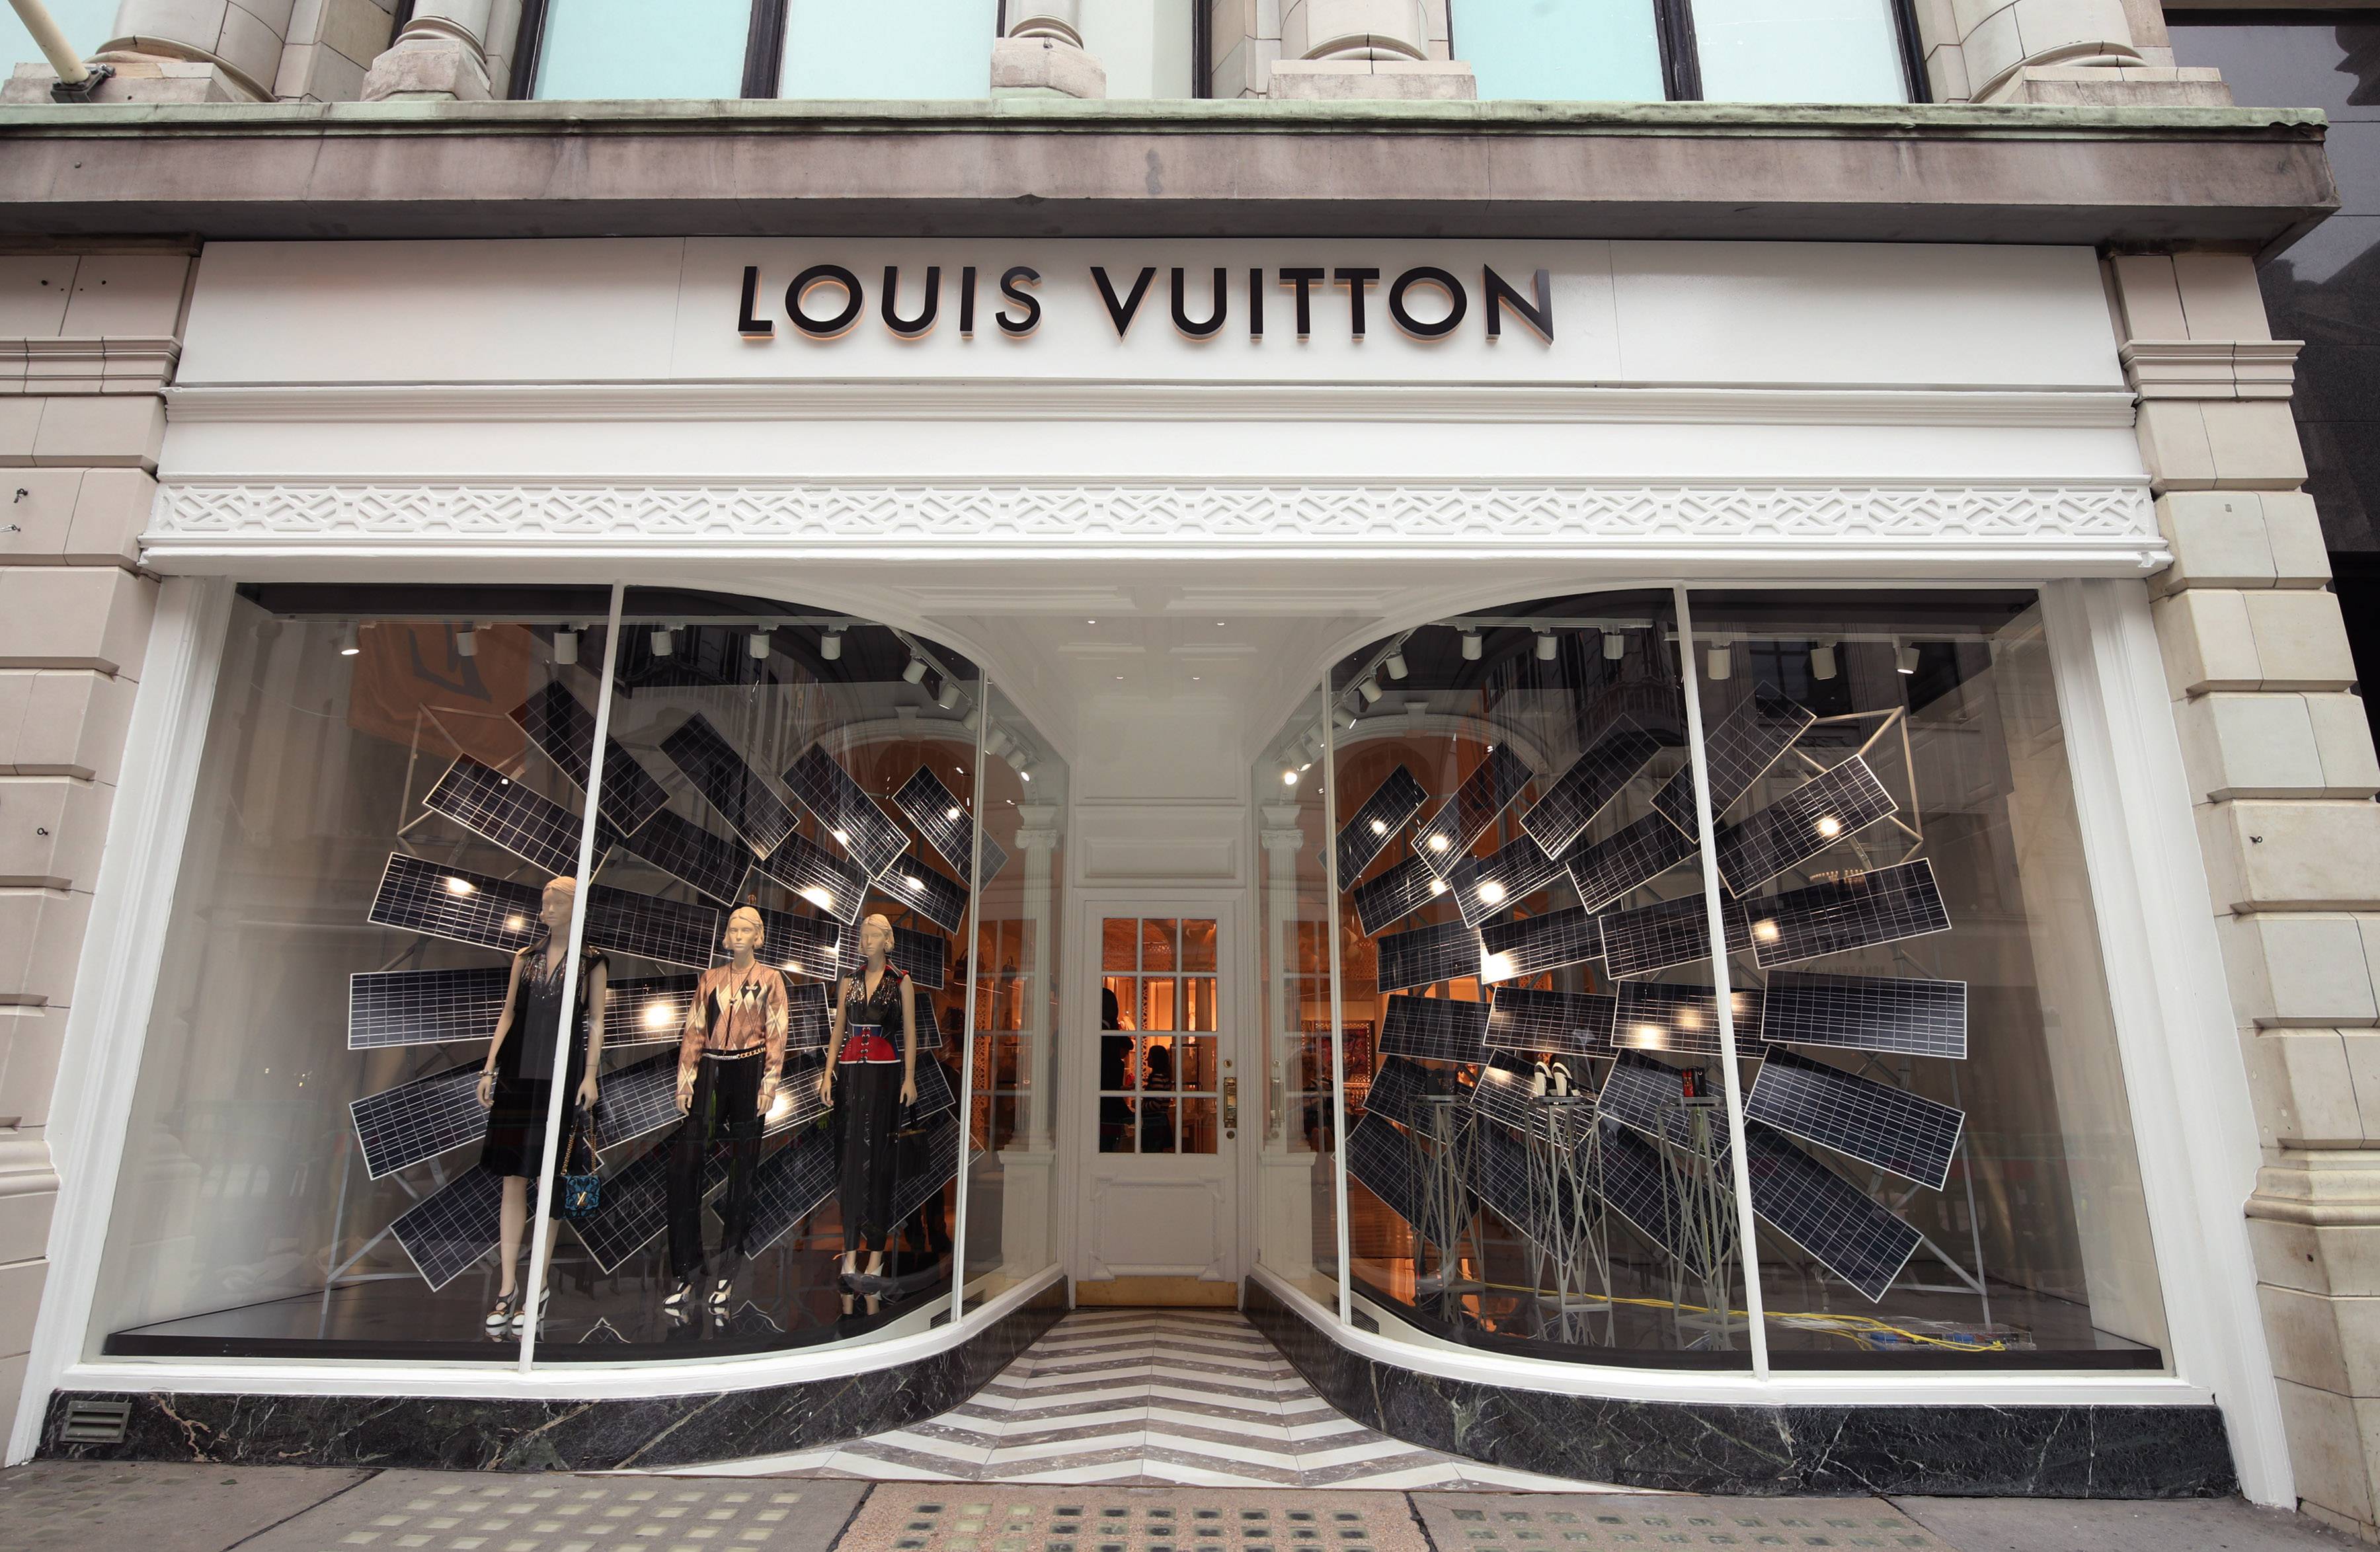 Virgil Abloh Talks About His Michael Jackson Inspiration for Louis Vuitton